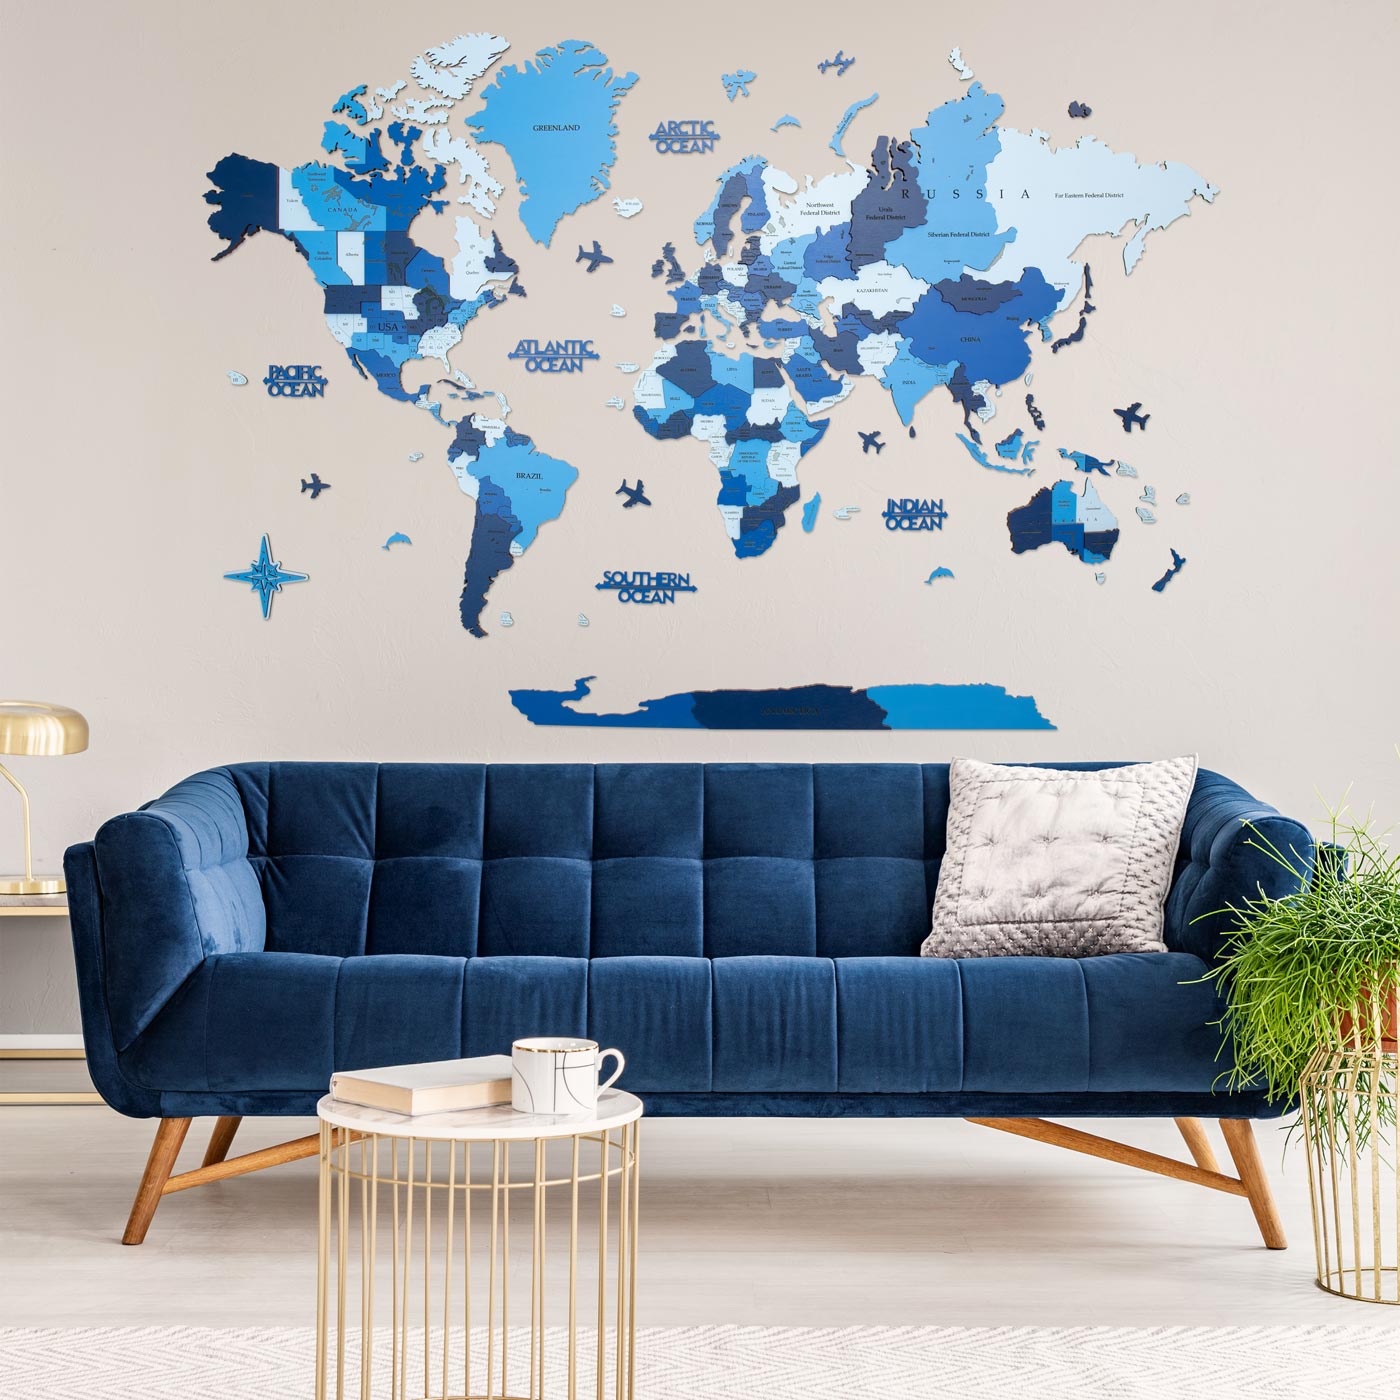 Τρισδιάστατος ξύλινος παγκόσμιος χάρτης. Ξύλινη διακόσμηση τοίχου. Χάρτης με μπλε αποχρώσεις. Ksilart